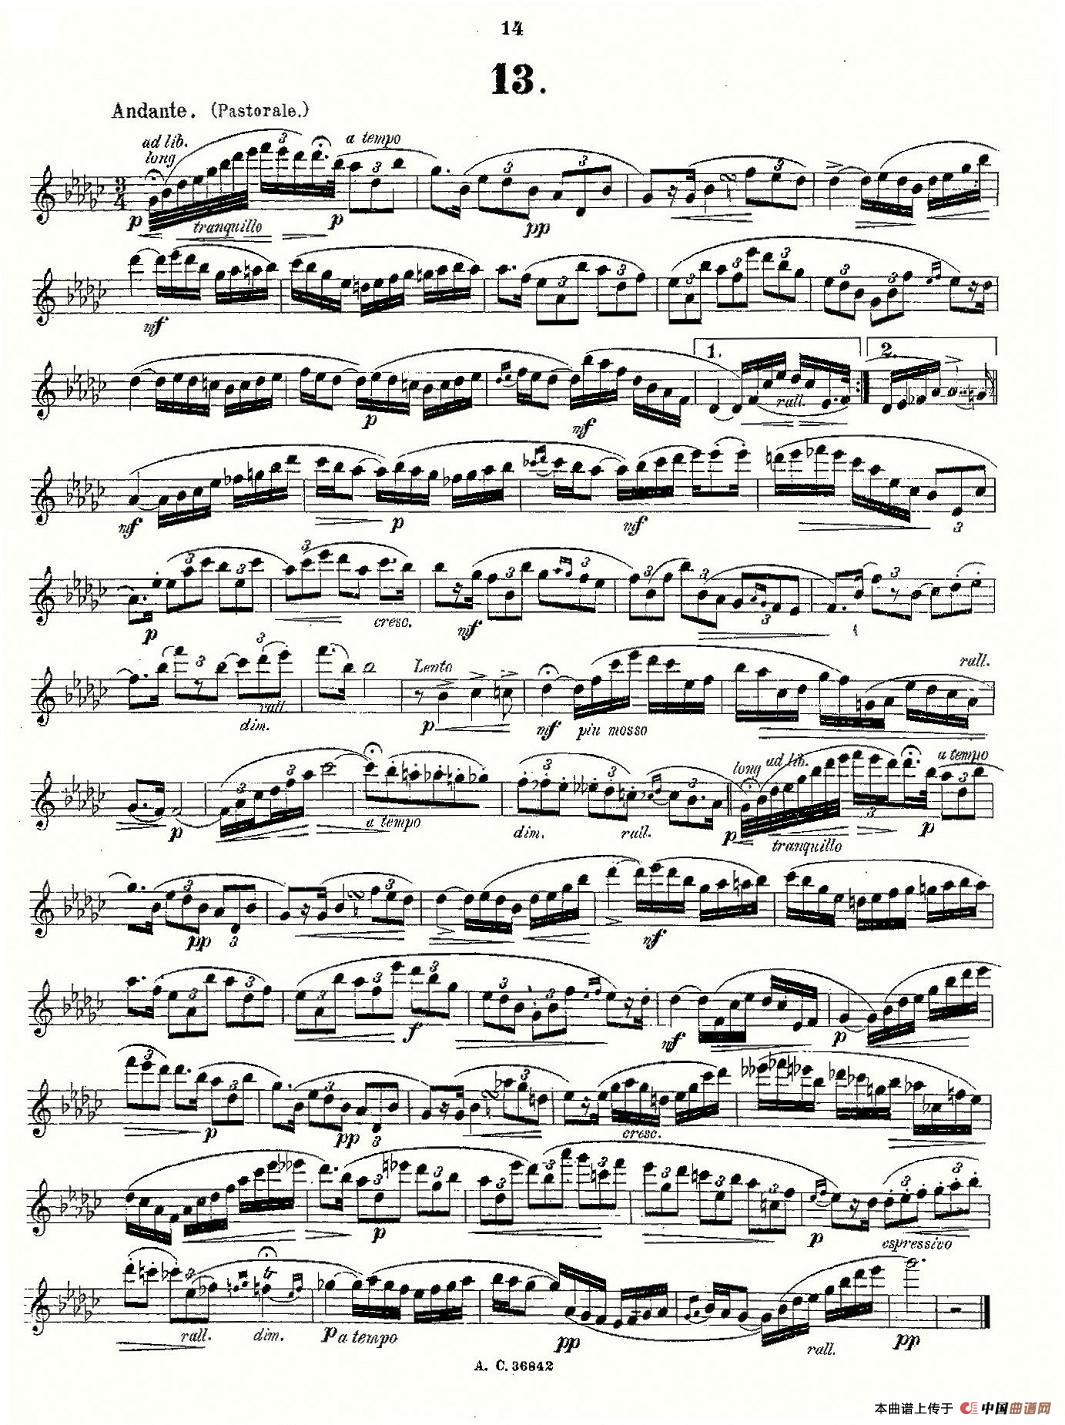 24首长笛练习曲 Op.21 之13-24长笛谱